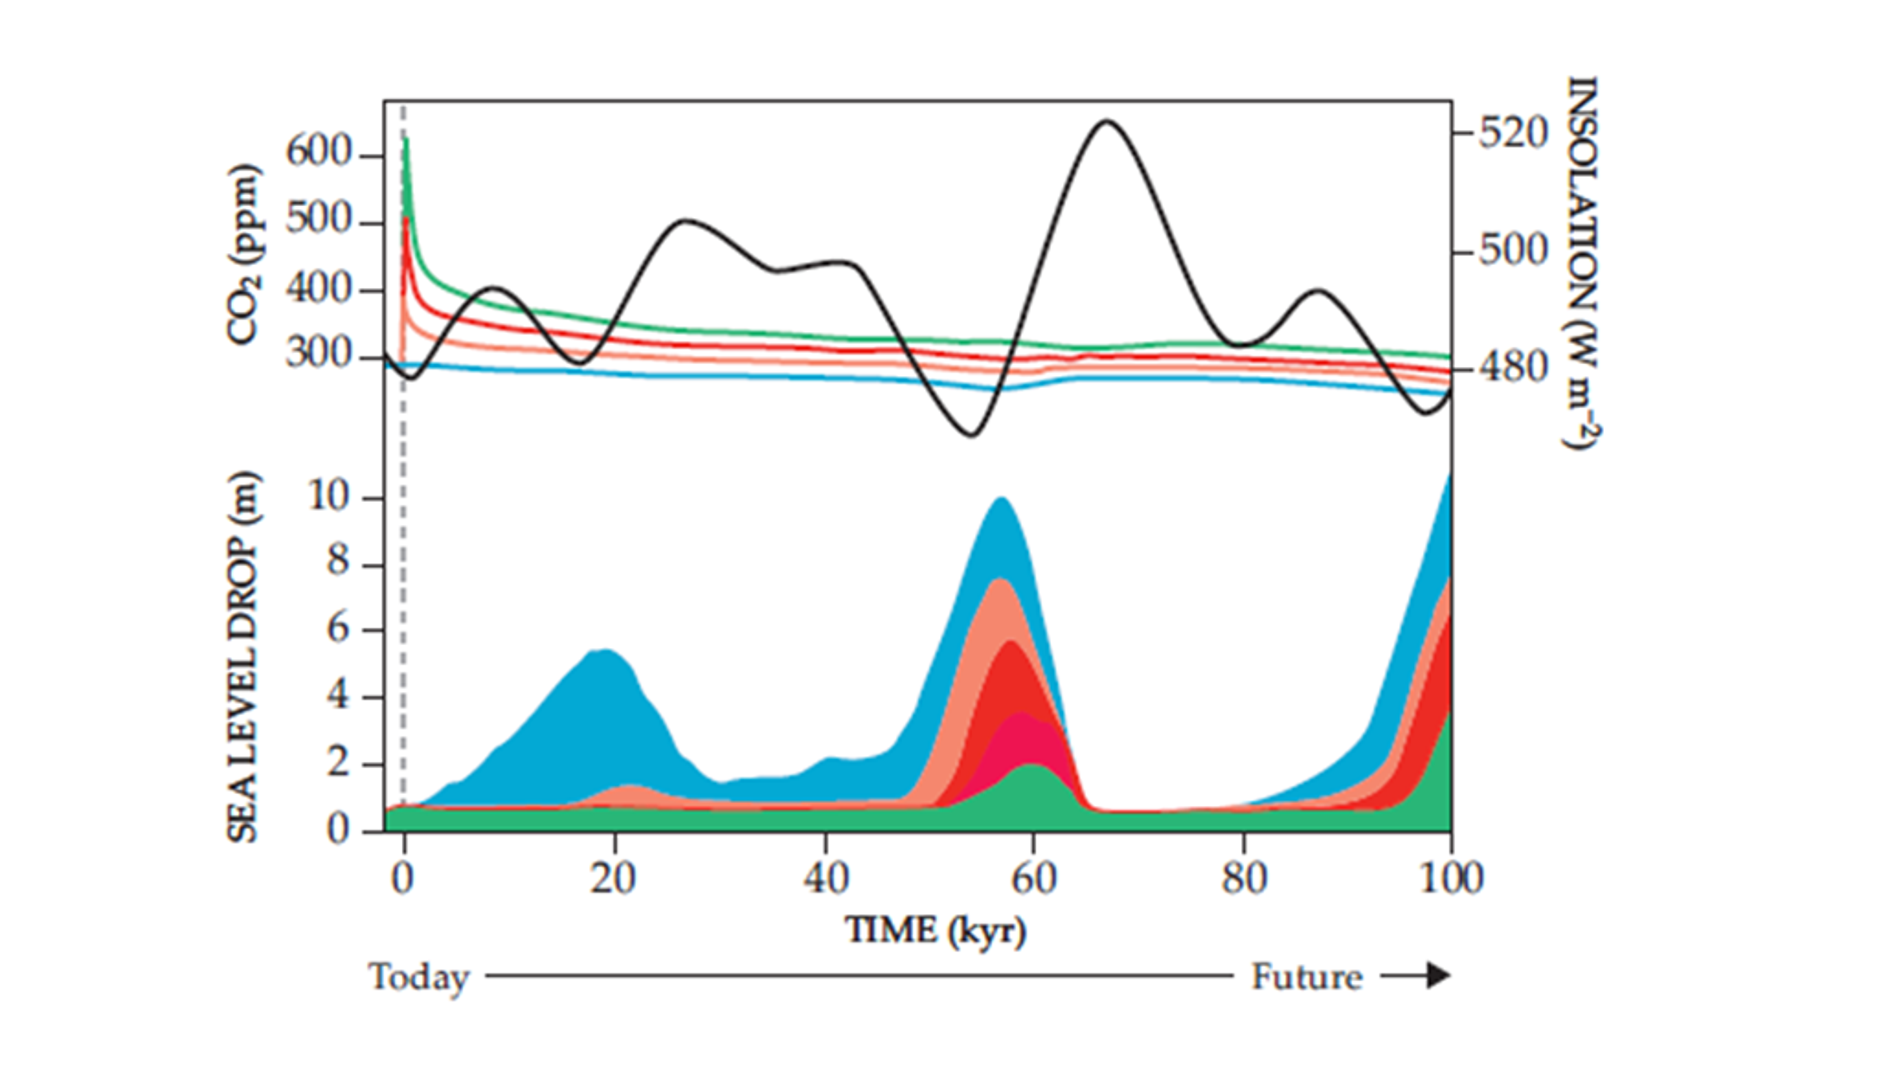 Buduća ledena doba ovise o djelovanju elemenata gibanja Zemlje i koncentraciji antropogenih stakleničkih plinova (obojane gornje linije) za vrijeme idućih 100 godina. Scenariji koncentracija stakleničkih plinova su preuzeti iz simulacija klimatskih modela – zeleni s najvećom koncentracijom, a redom s manjom crveni, narančasti i plavi  – pokazuje da antropogene klimatske promjene zasjenjuju efekte promjene elemenata gibanja Zemlje i mogli bi odgoditi pojavu sljedećeg ledenog doba za oko 60 tisuća godina od danas (prema “Physics today”, 2020). 